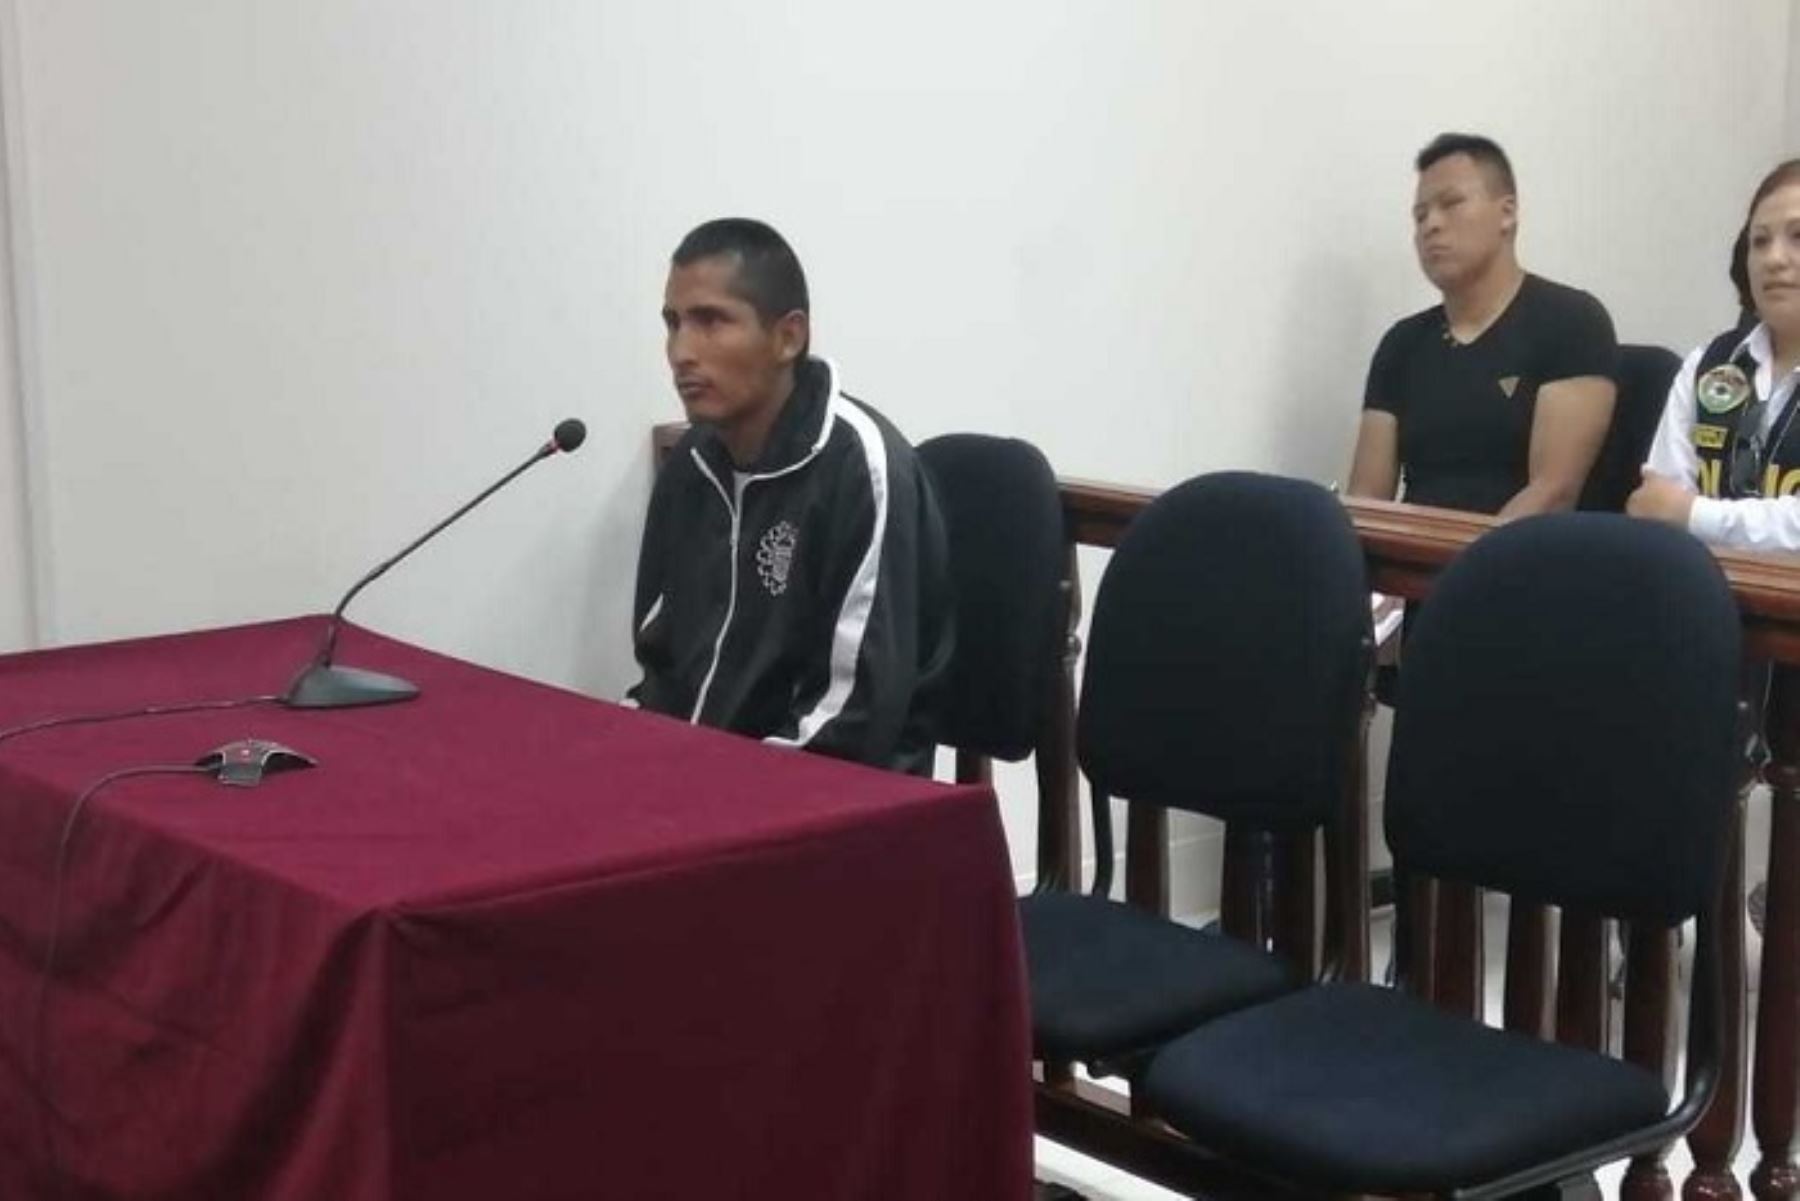 Michael Oscco Quispe (21), acusado de ultrajar y asesinar a dos niñas en la provincia de Andahuaylas, región Apurímac, cumplirá los 18 meses de prisión preventiva de la libertad en el penal de Varones Qenccoro de Cusco.